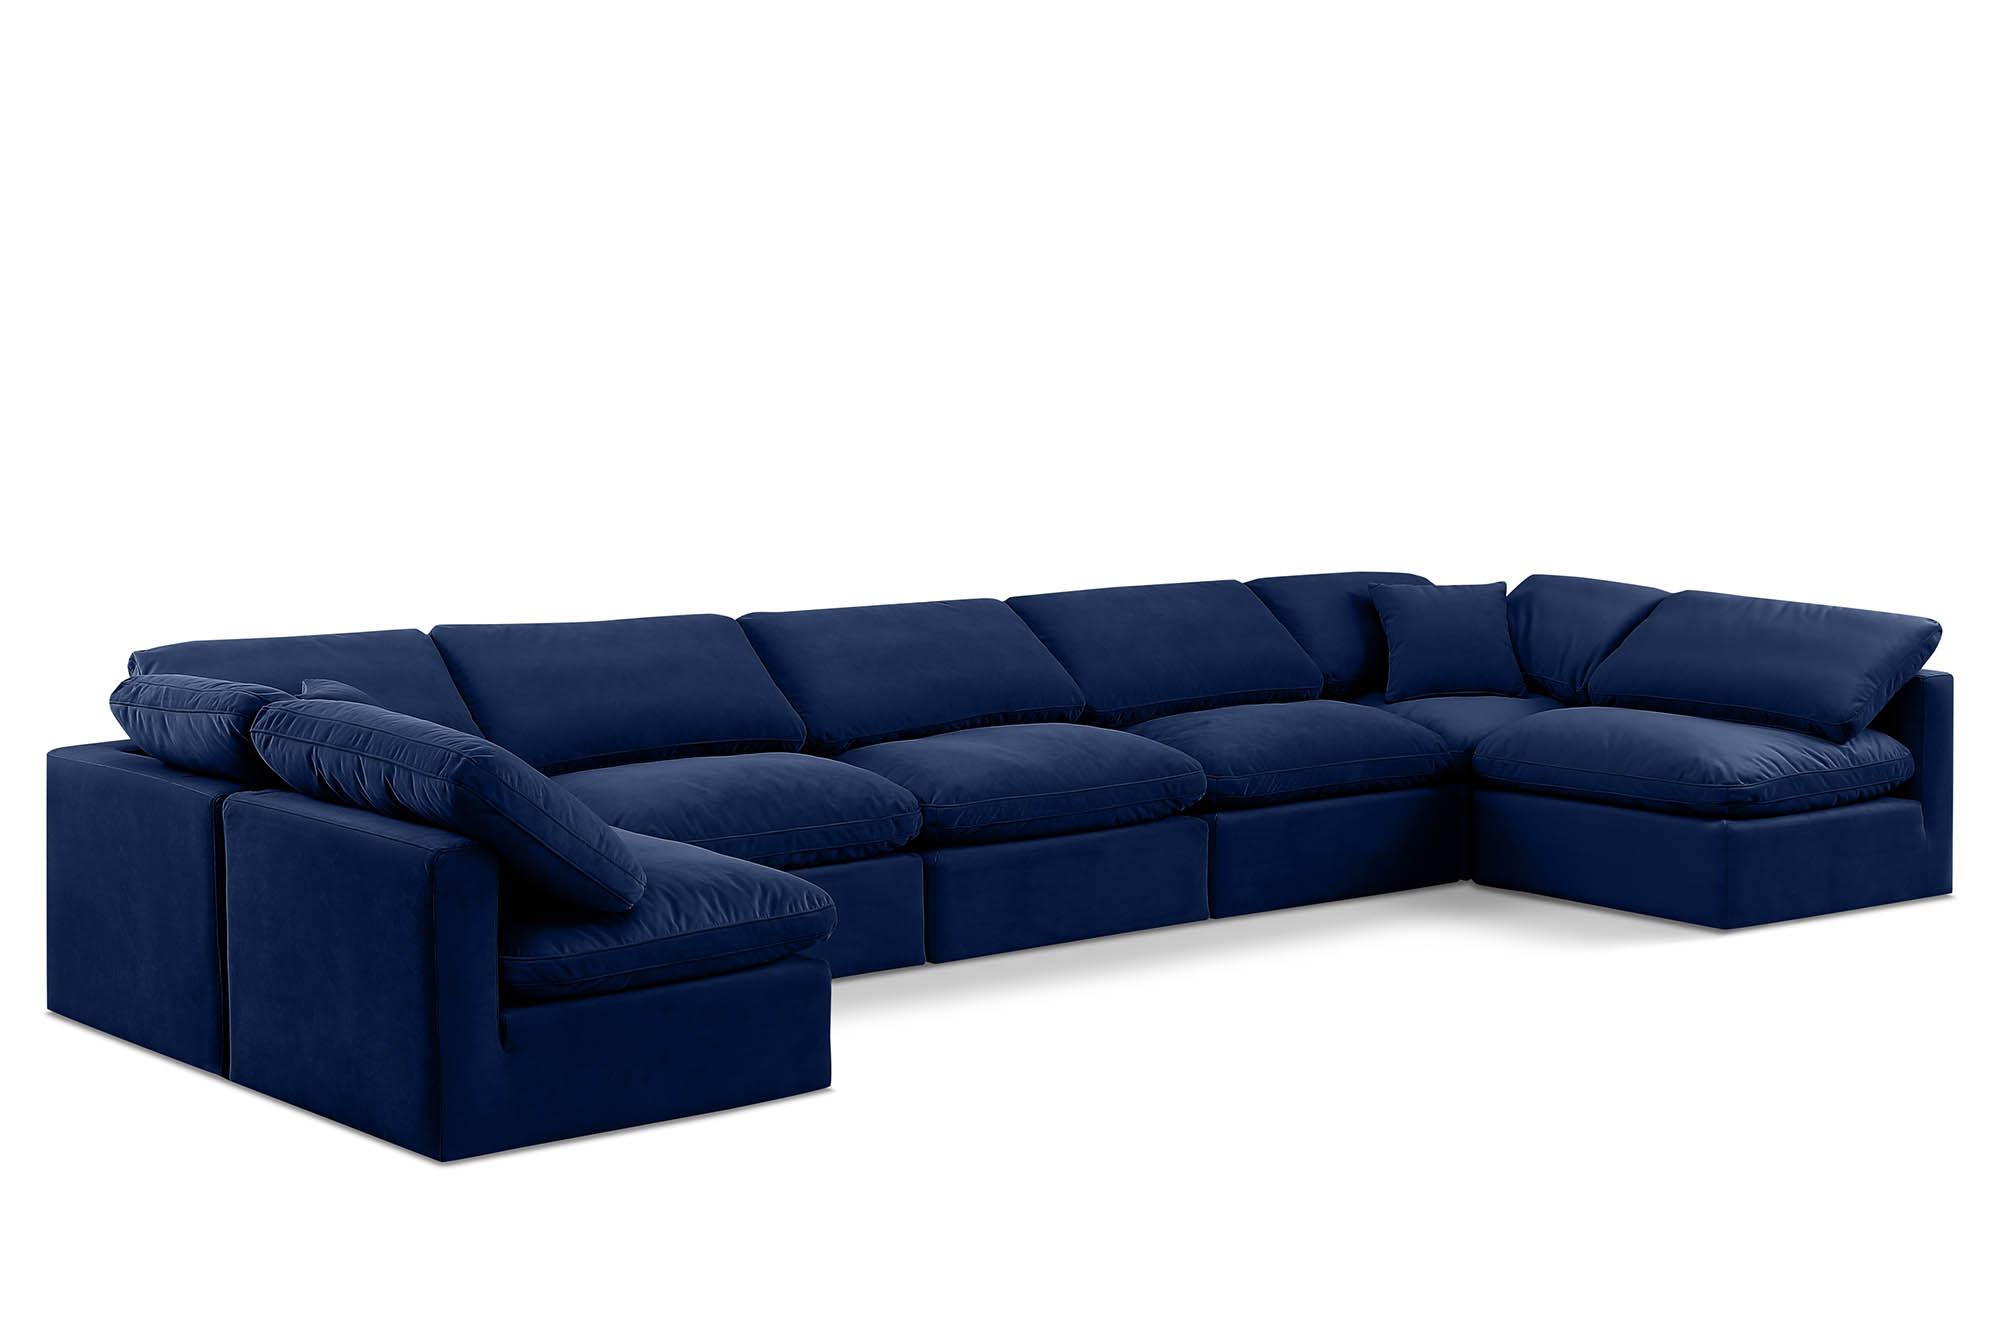 Contemporary, Modern Modular Sectional Sofa INDULGE 147Navy-Sec7B 147Navy-Sec7B in Navy Velvet